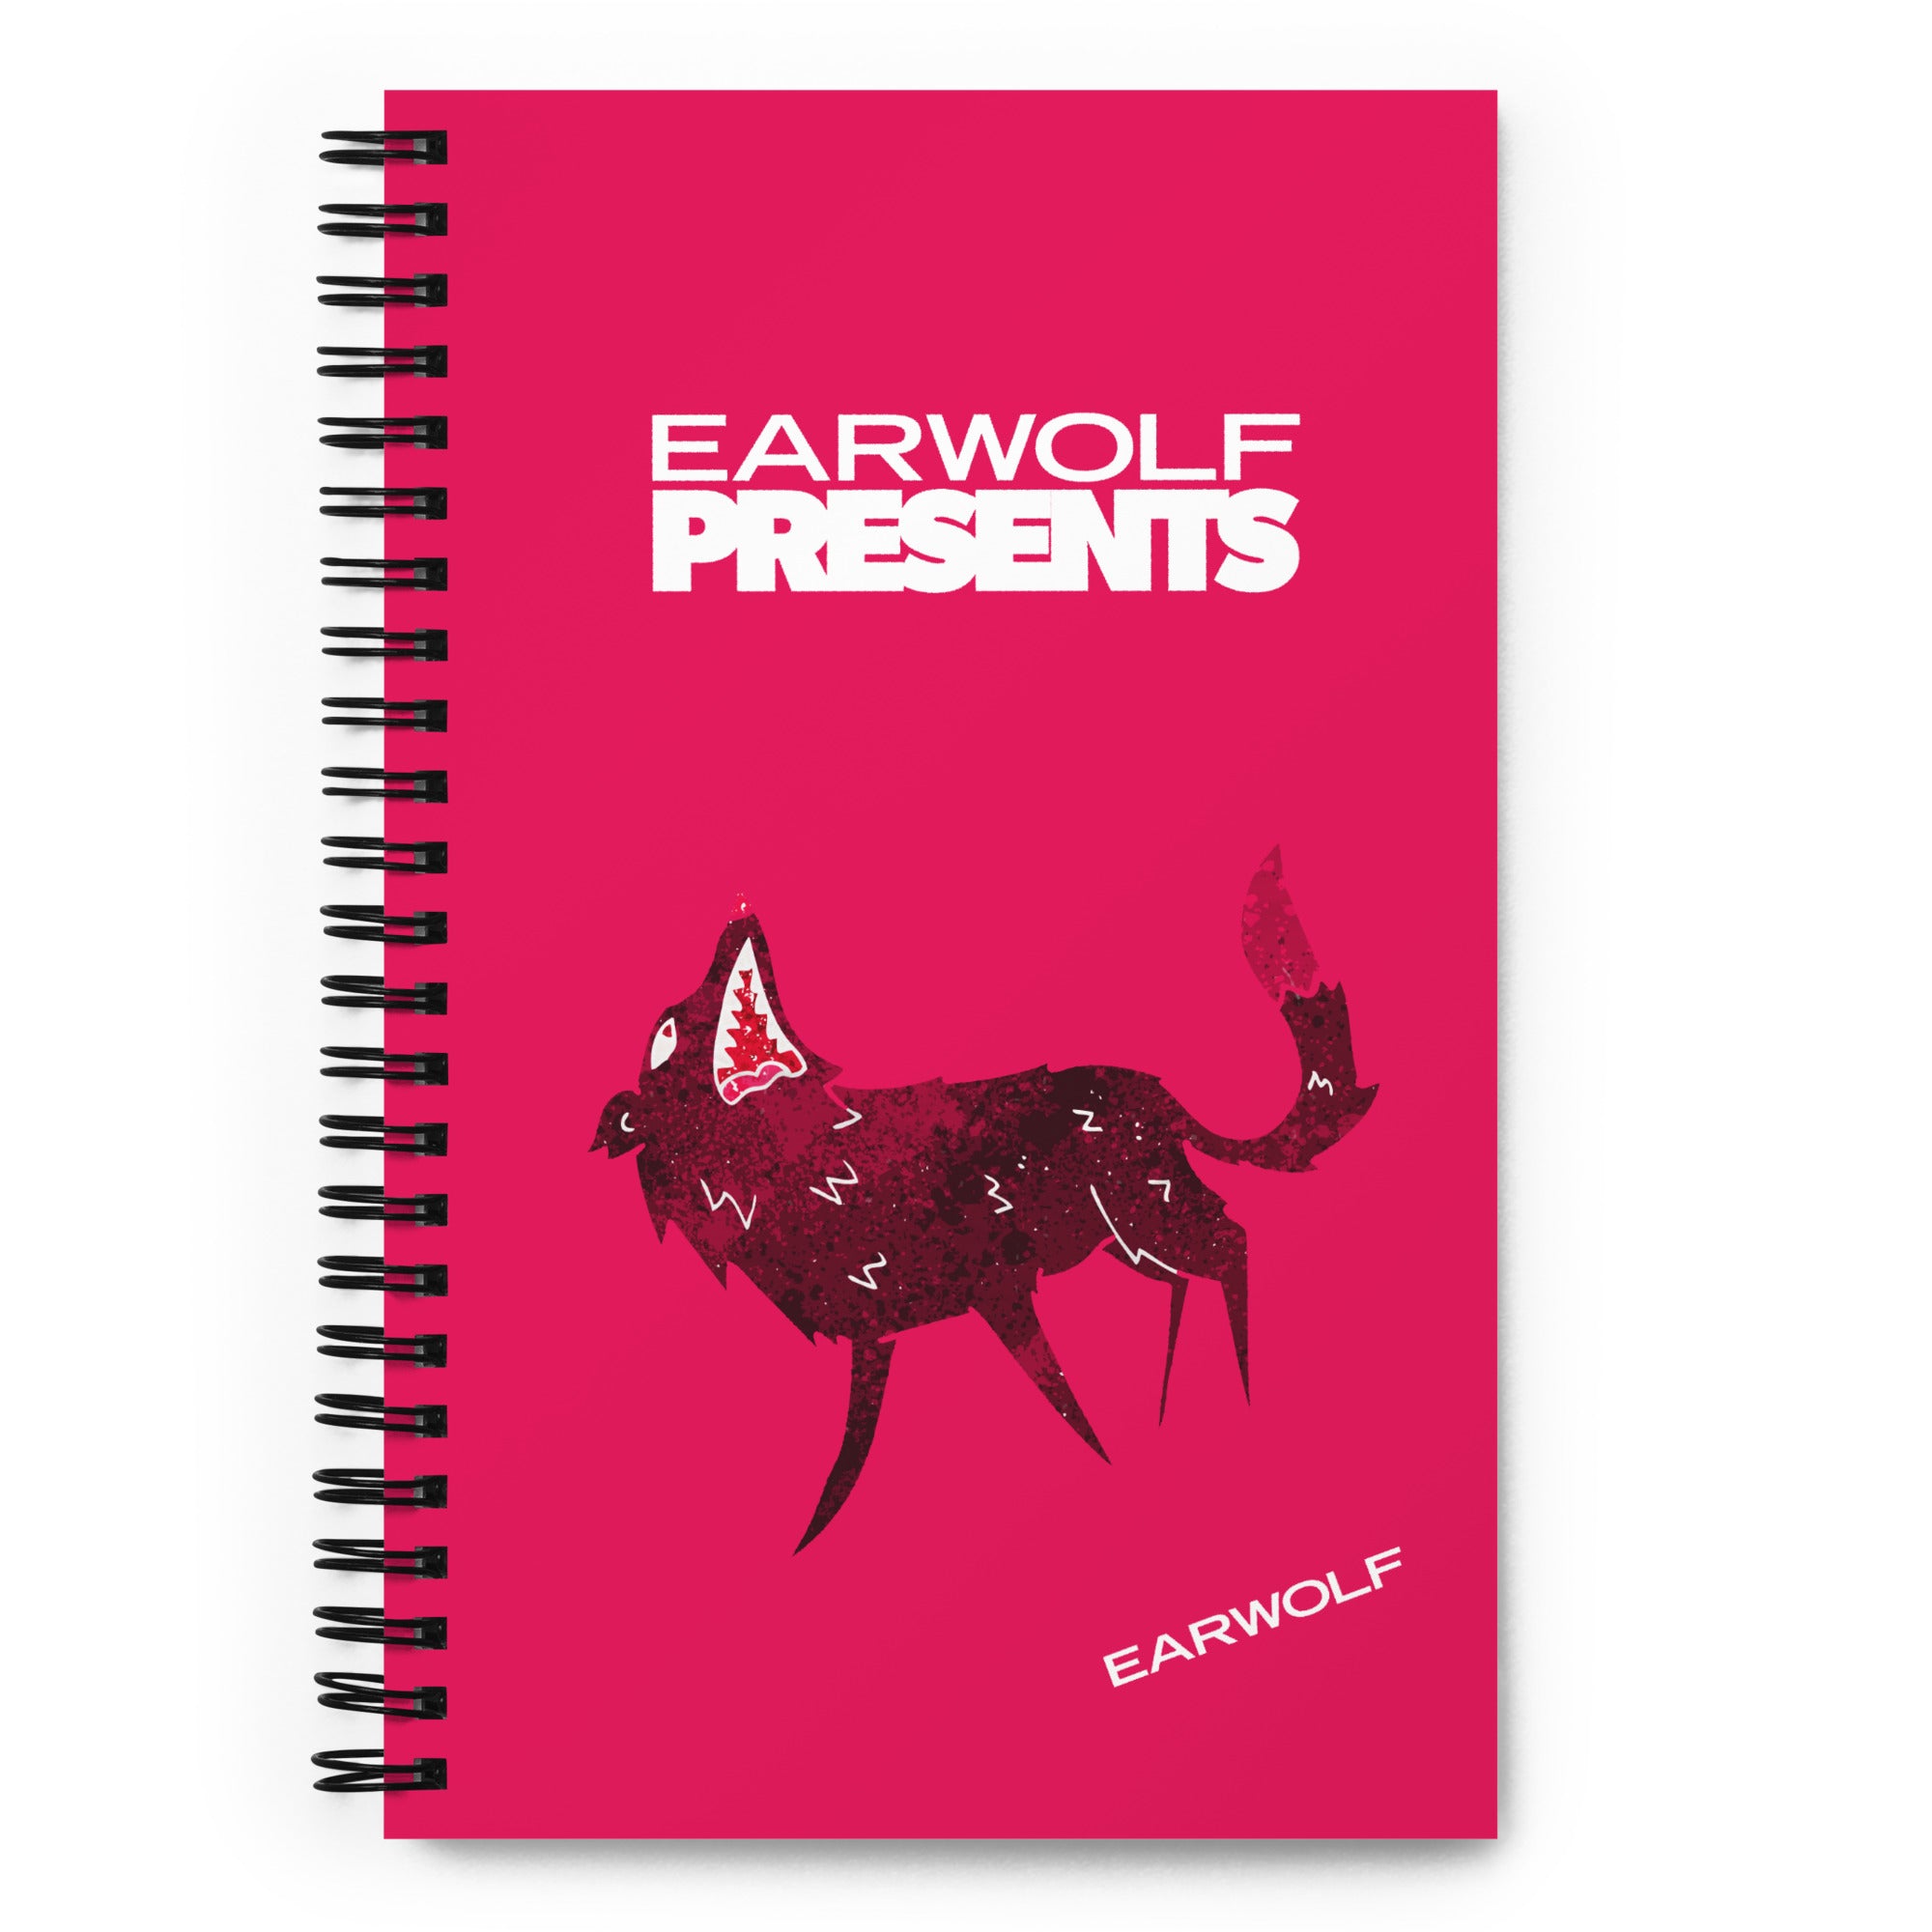 Earwolf Presents: Pink Spiral Notebook